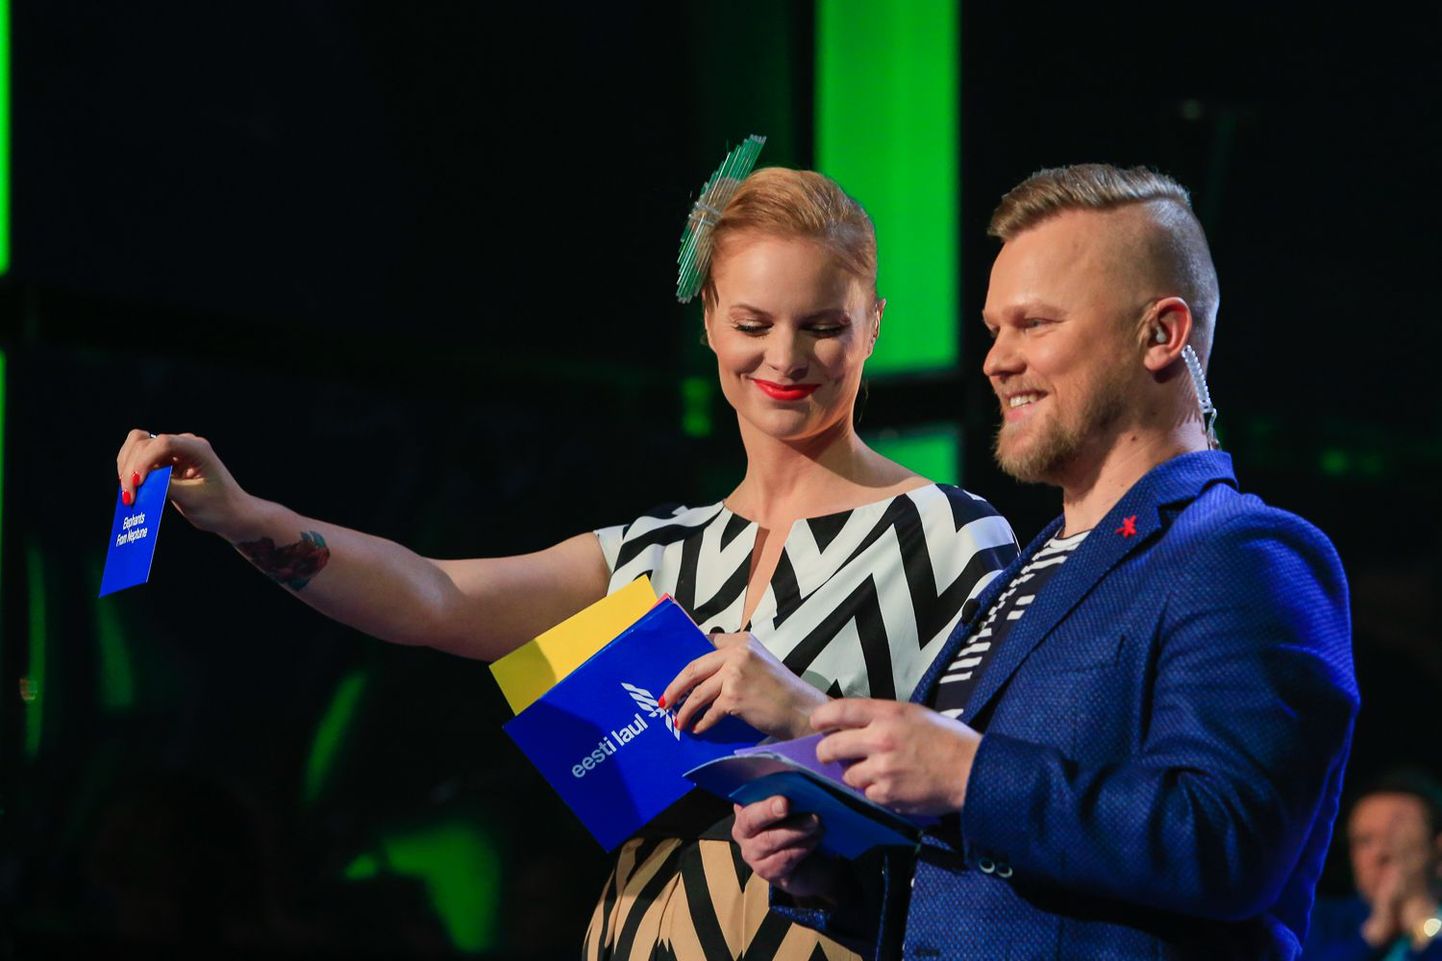 Eesti Laul 2015, esimene poolfinaal, otsesaade. Heöen Sürje ja Indrek Vaheoja